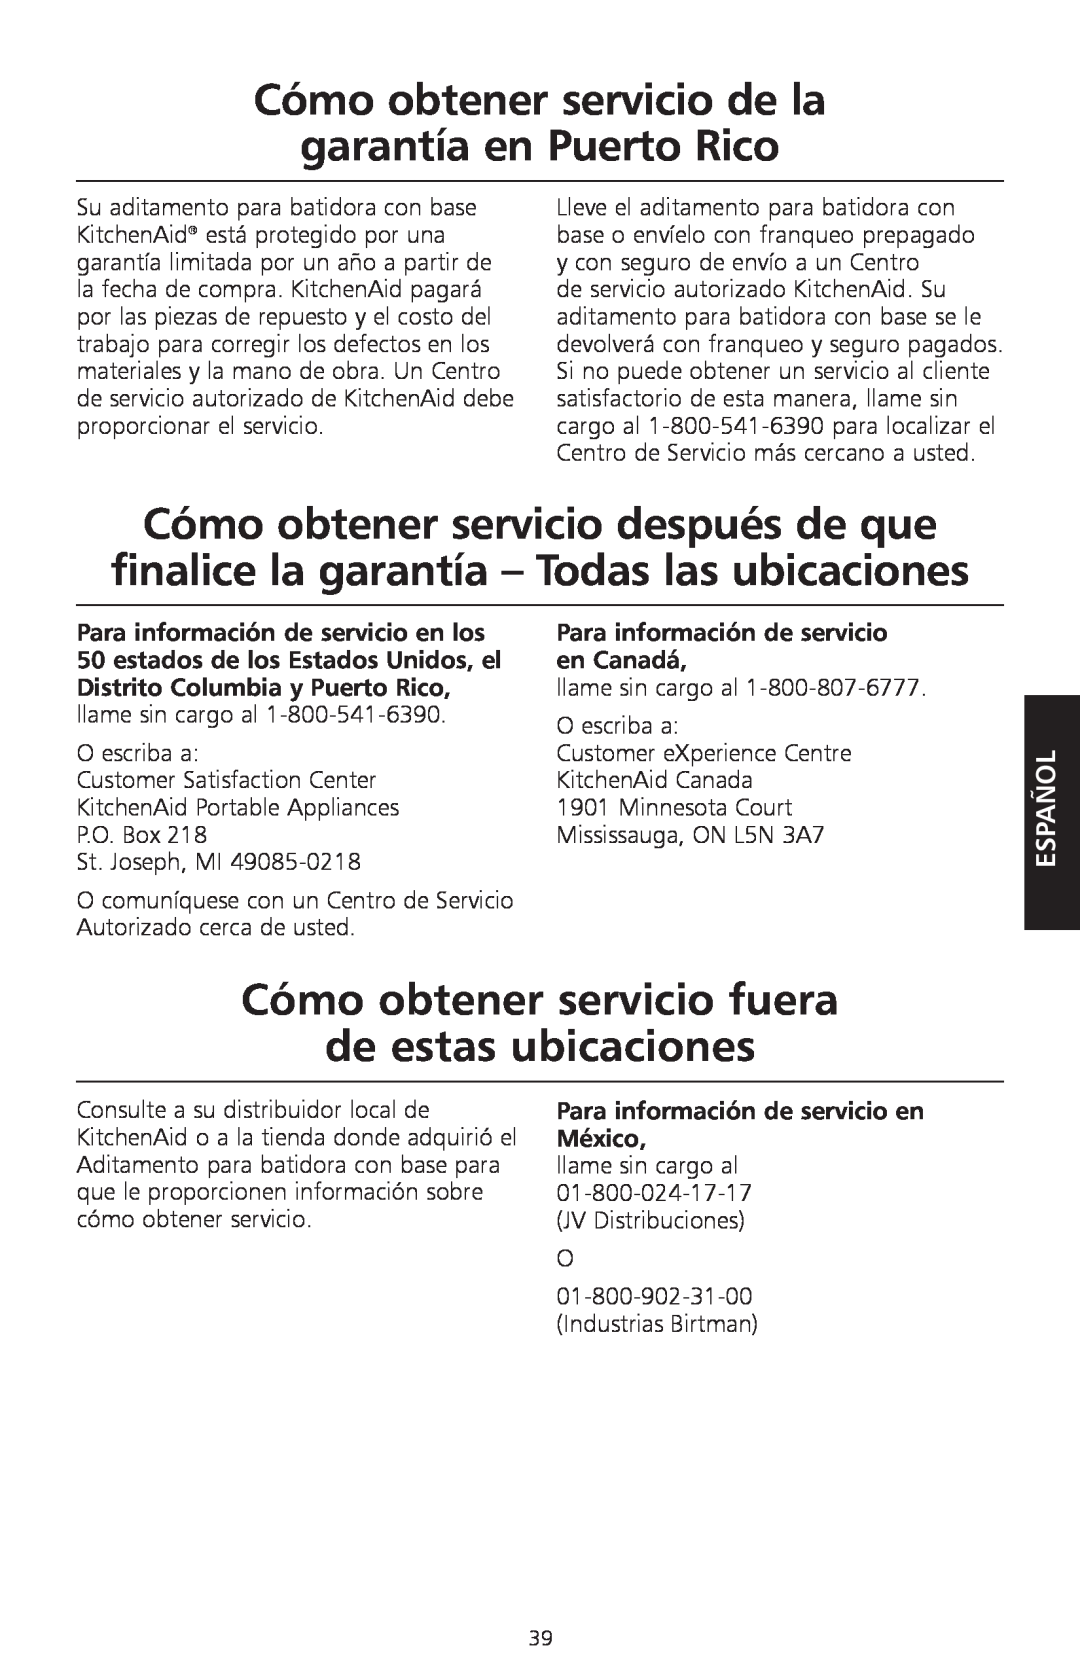 KitchenAid KPEX Cómo obtener servicio de la garantía en Puerto Rico, Cómo obtener servicio fuera de estas ubicaciones 